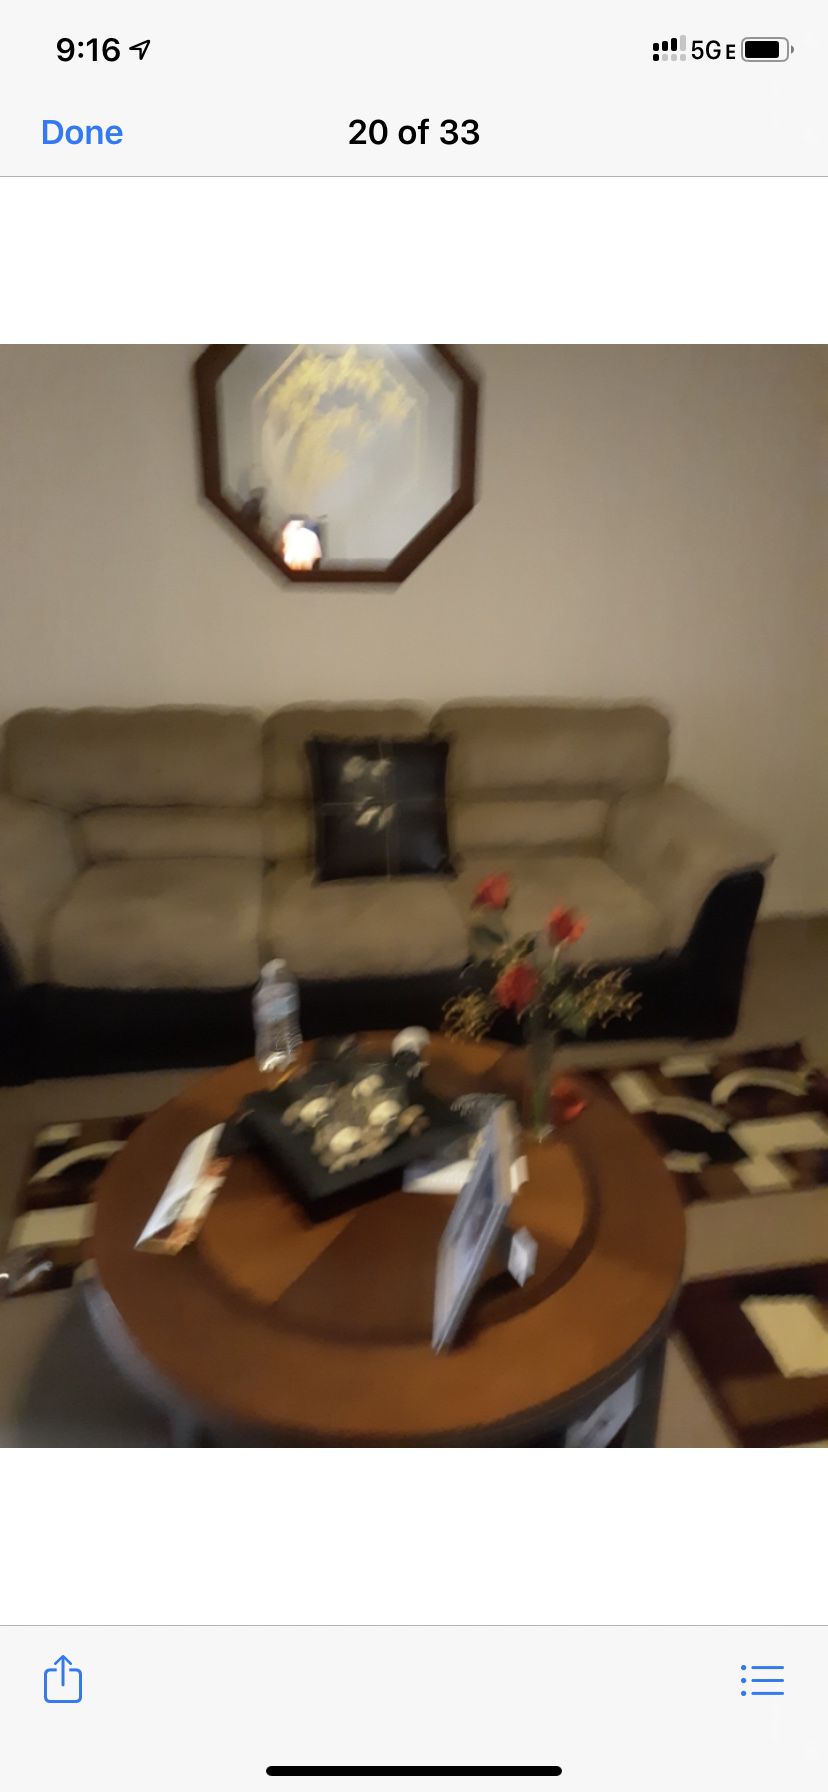 Living room furniture set